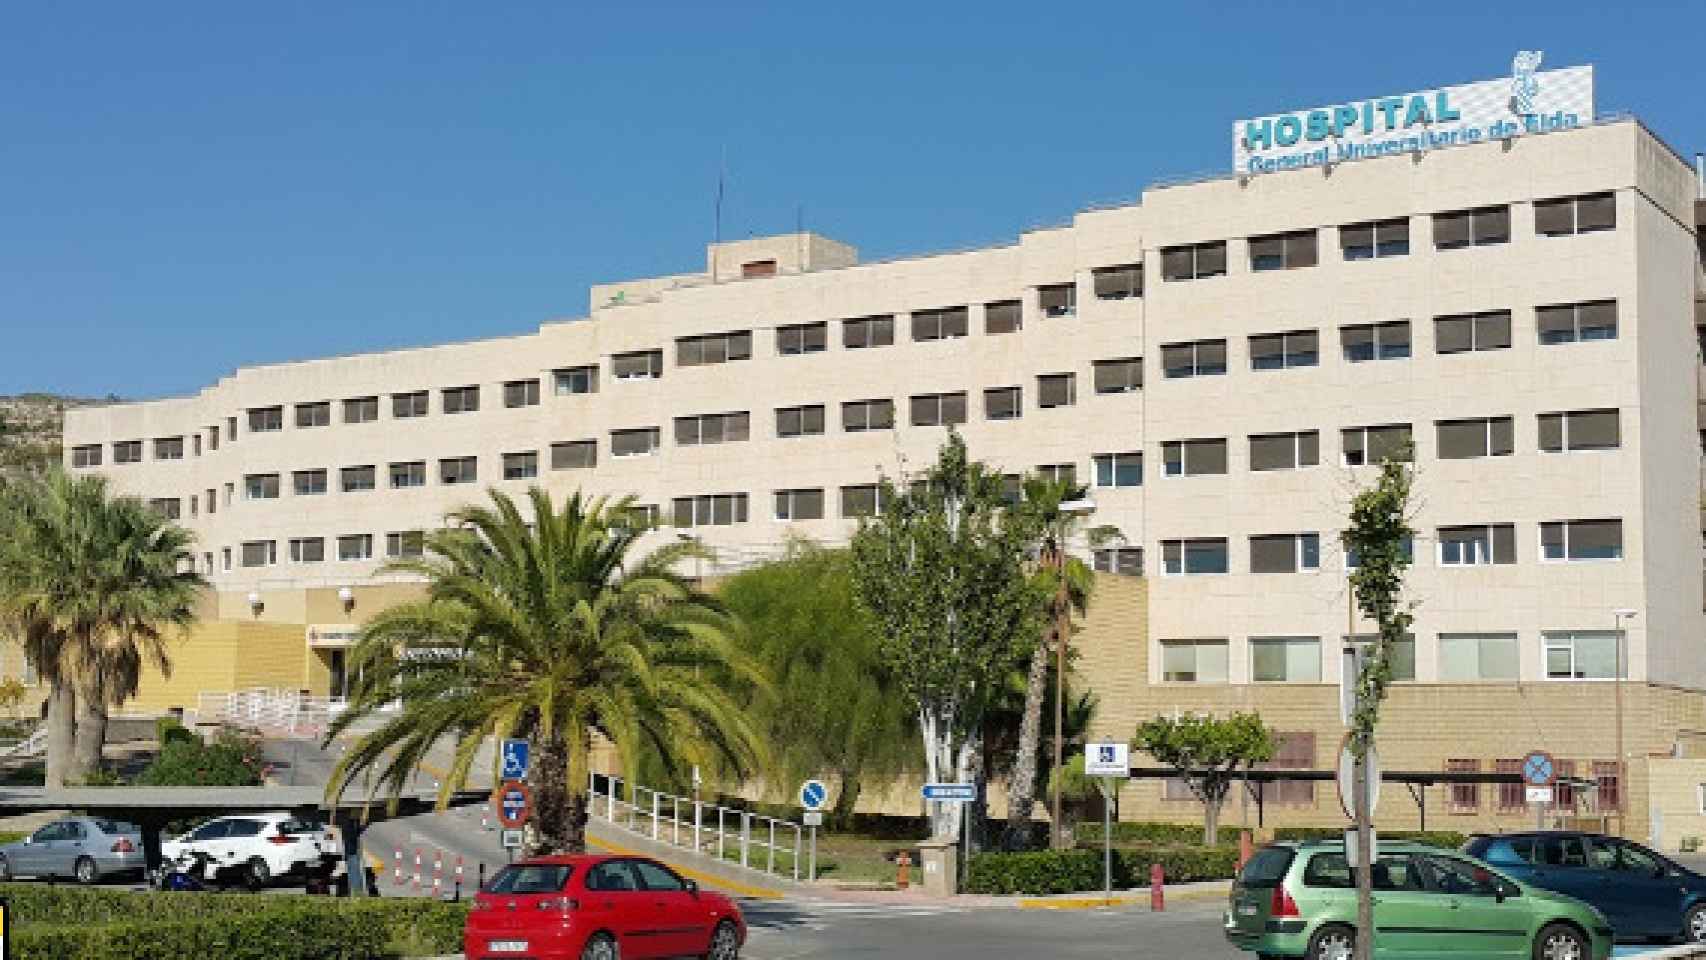 Hospital General Universitario de Elda donde ingresó de urgencia el menor horas antes de morir el 28 de octubre.